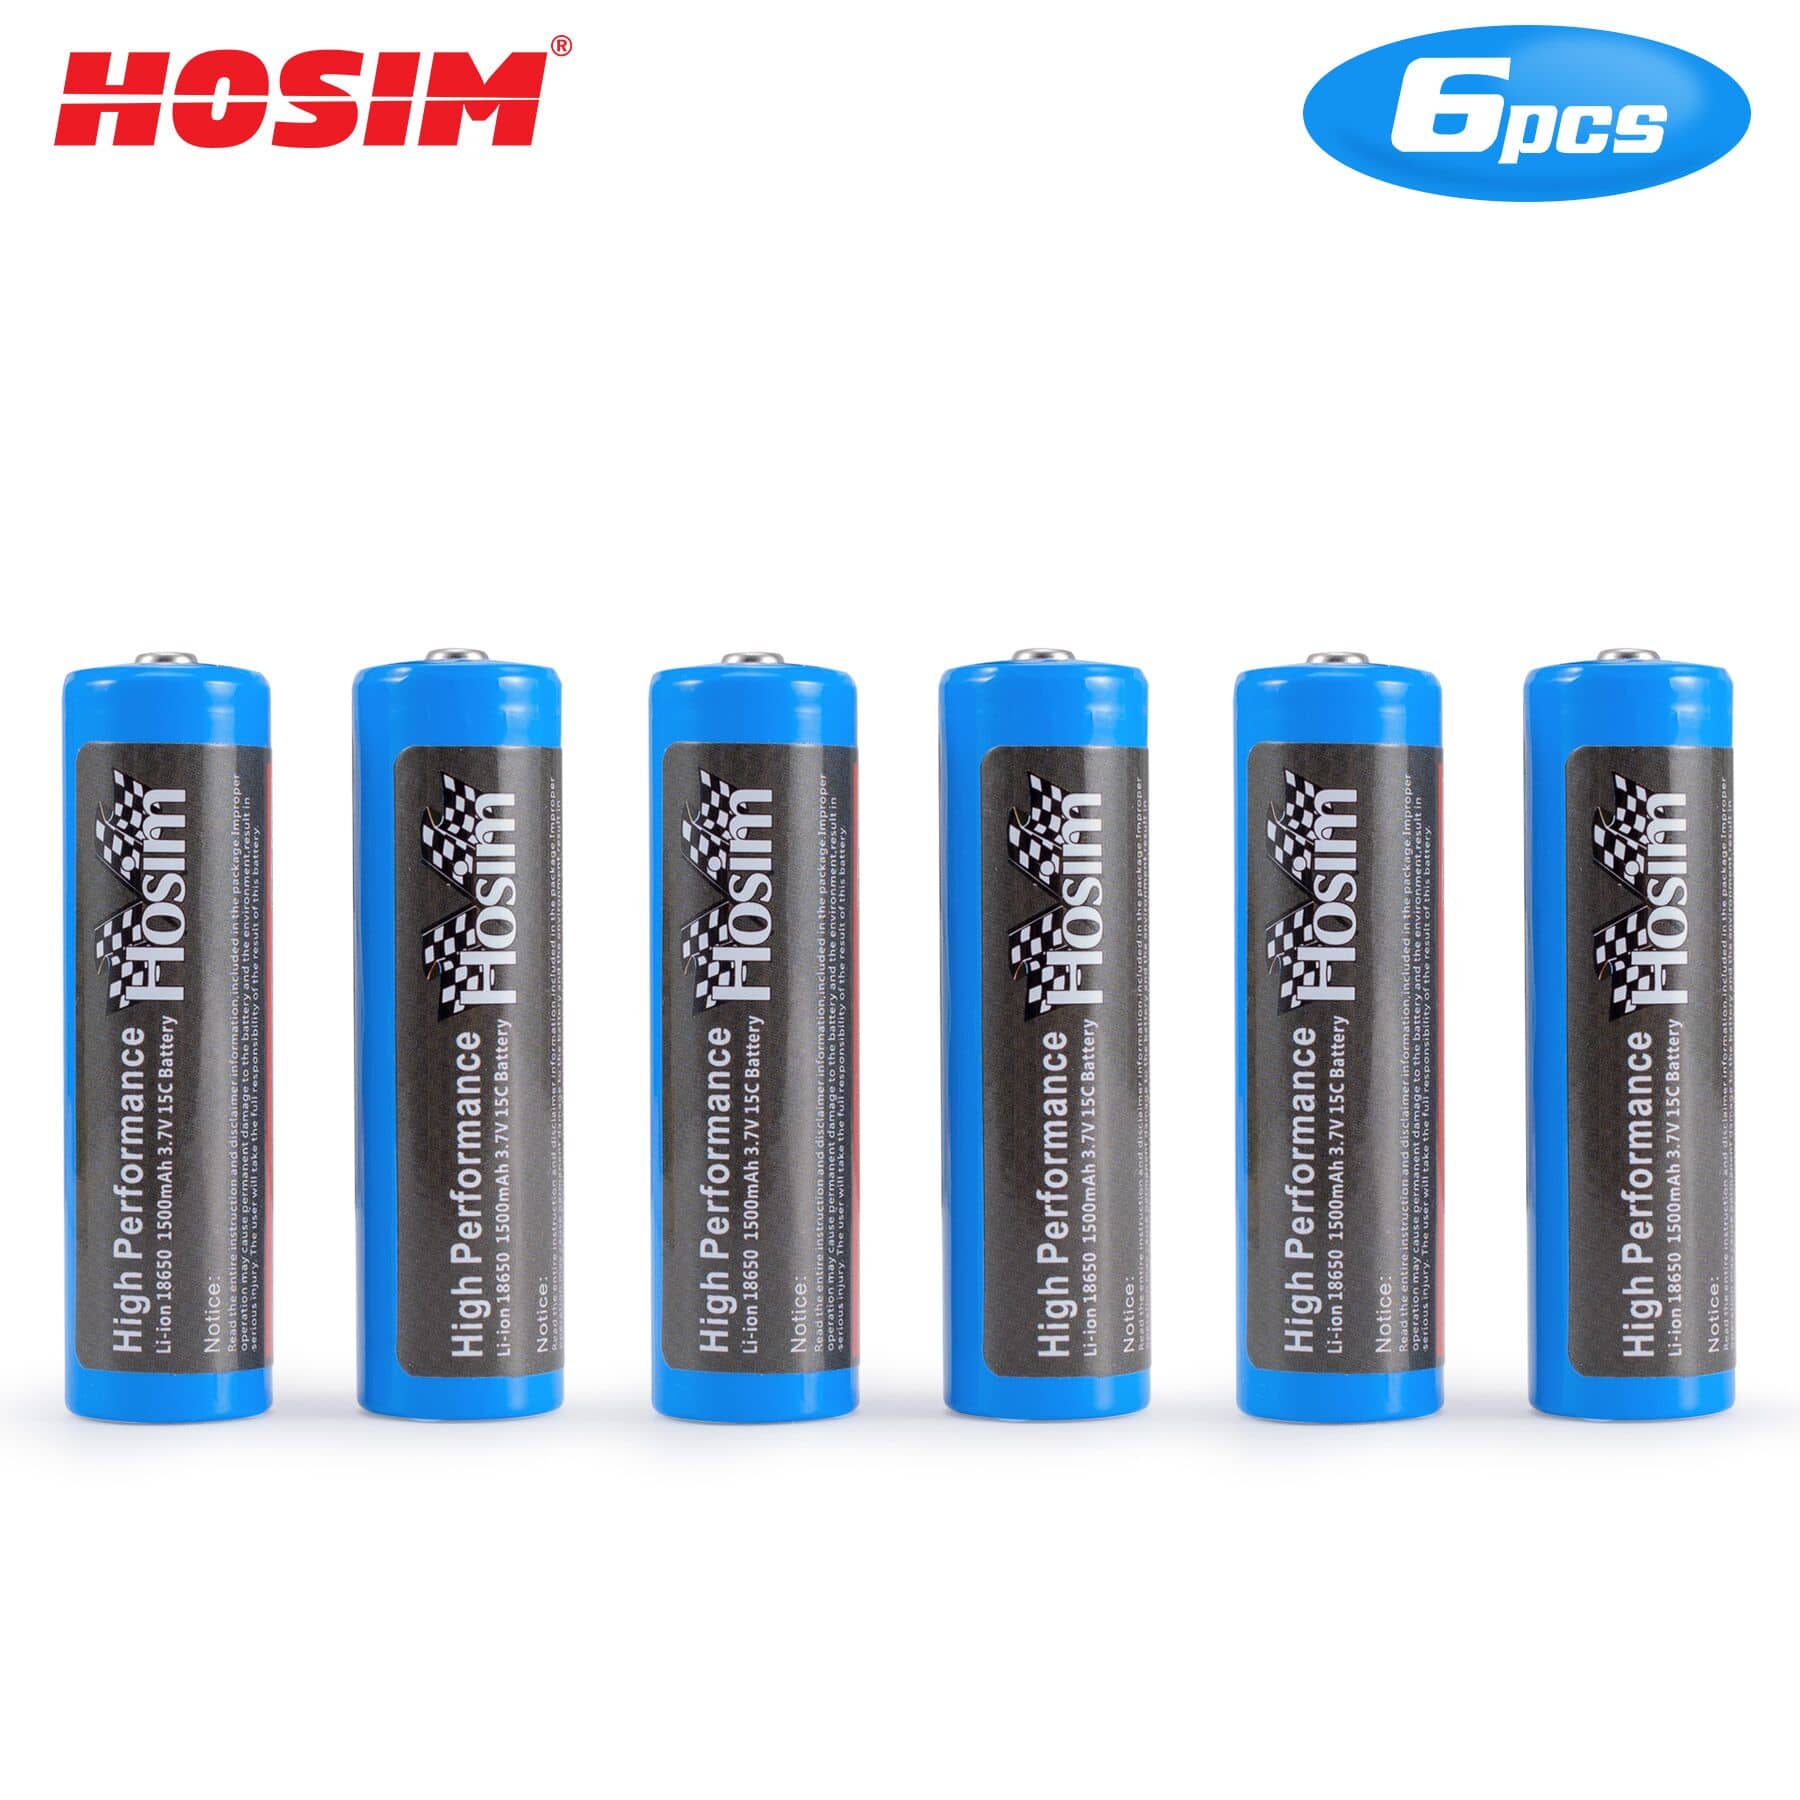 Hosim 6 Pack 3.7V 15C 1500mAh Li-ion RC Car Battery for G171 G172 G173 G174